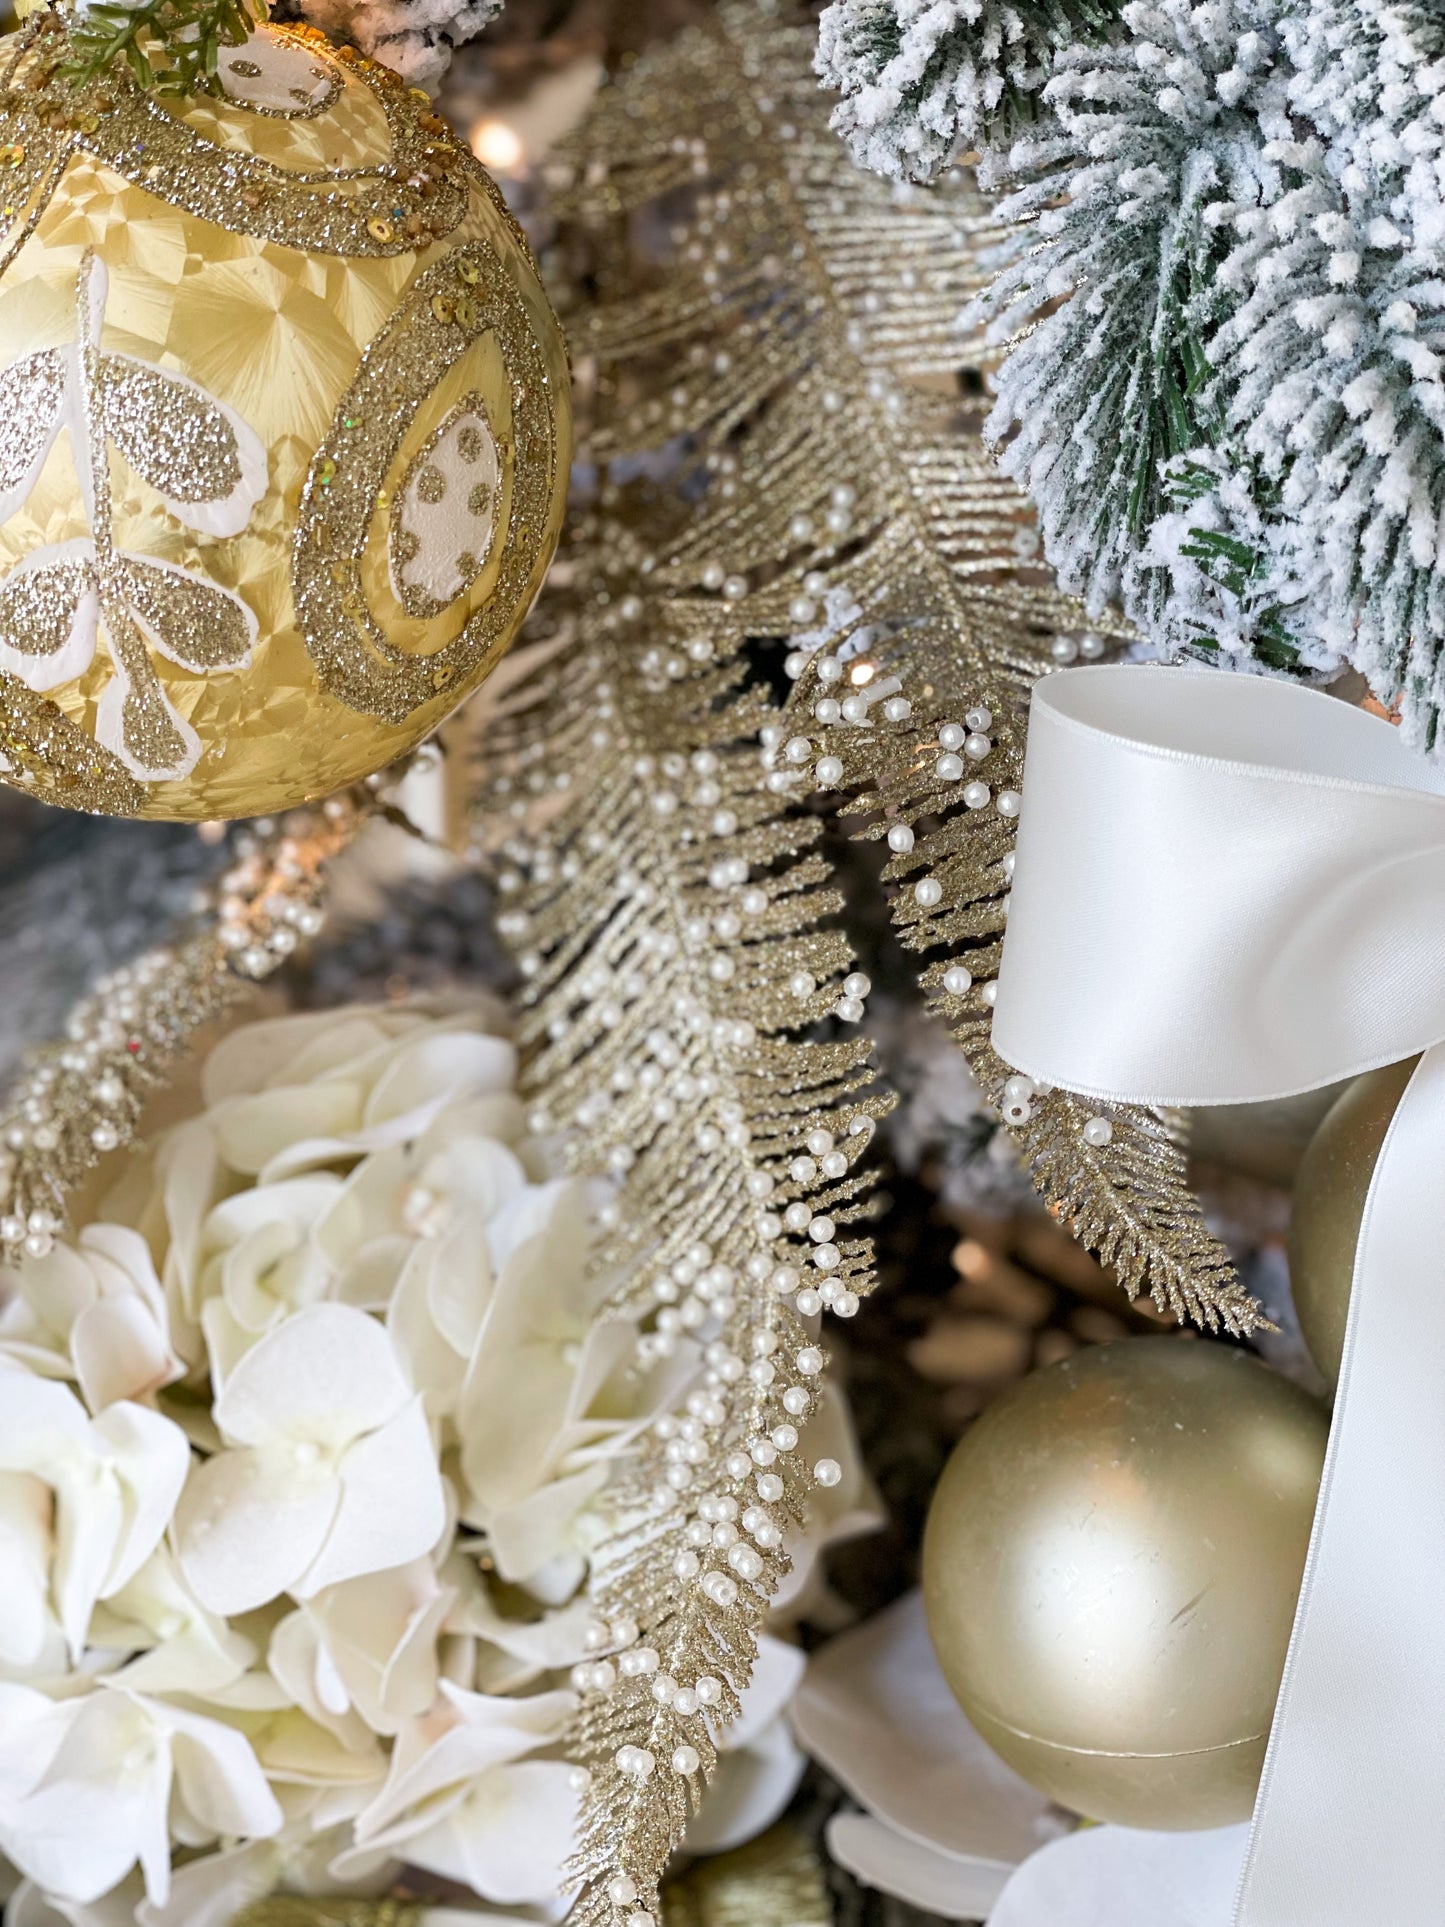 The Emmanuel Christmas Tree Blanc Box